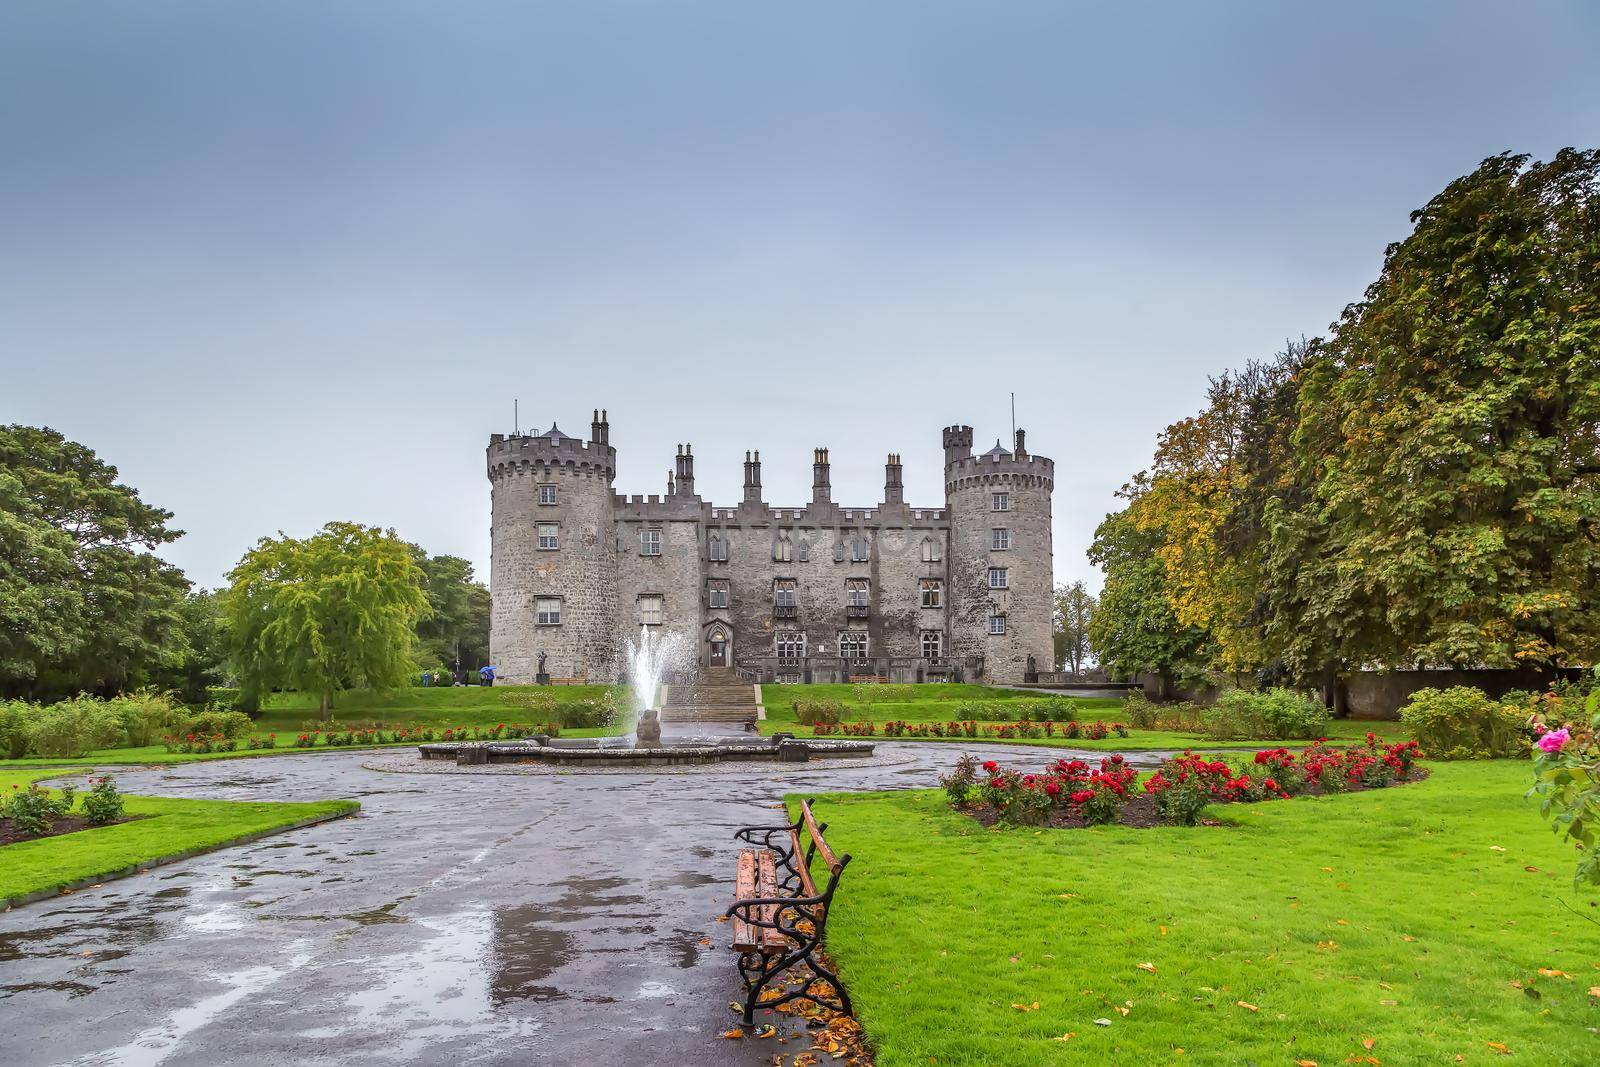 Kilkenny Castle is a castle in Kilkenny, Ireland built in 1195, View from garden